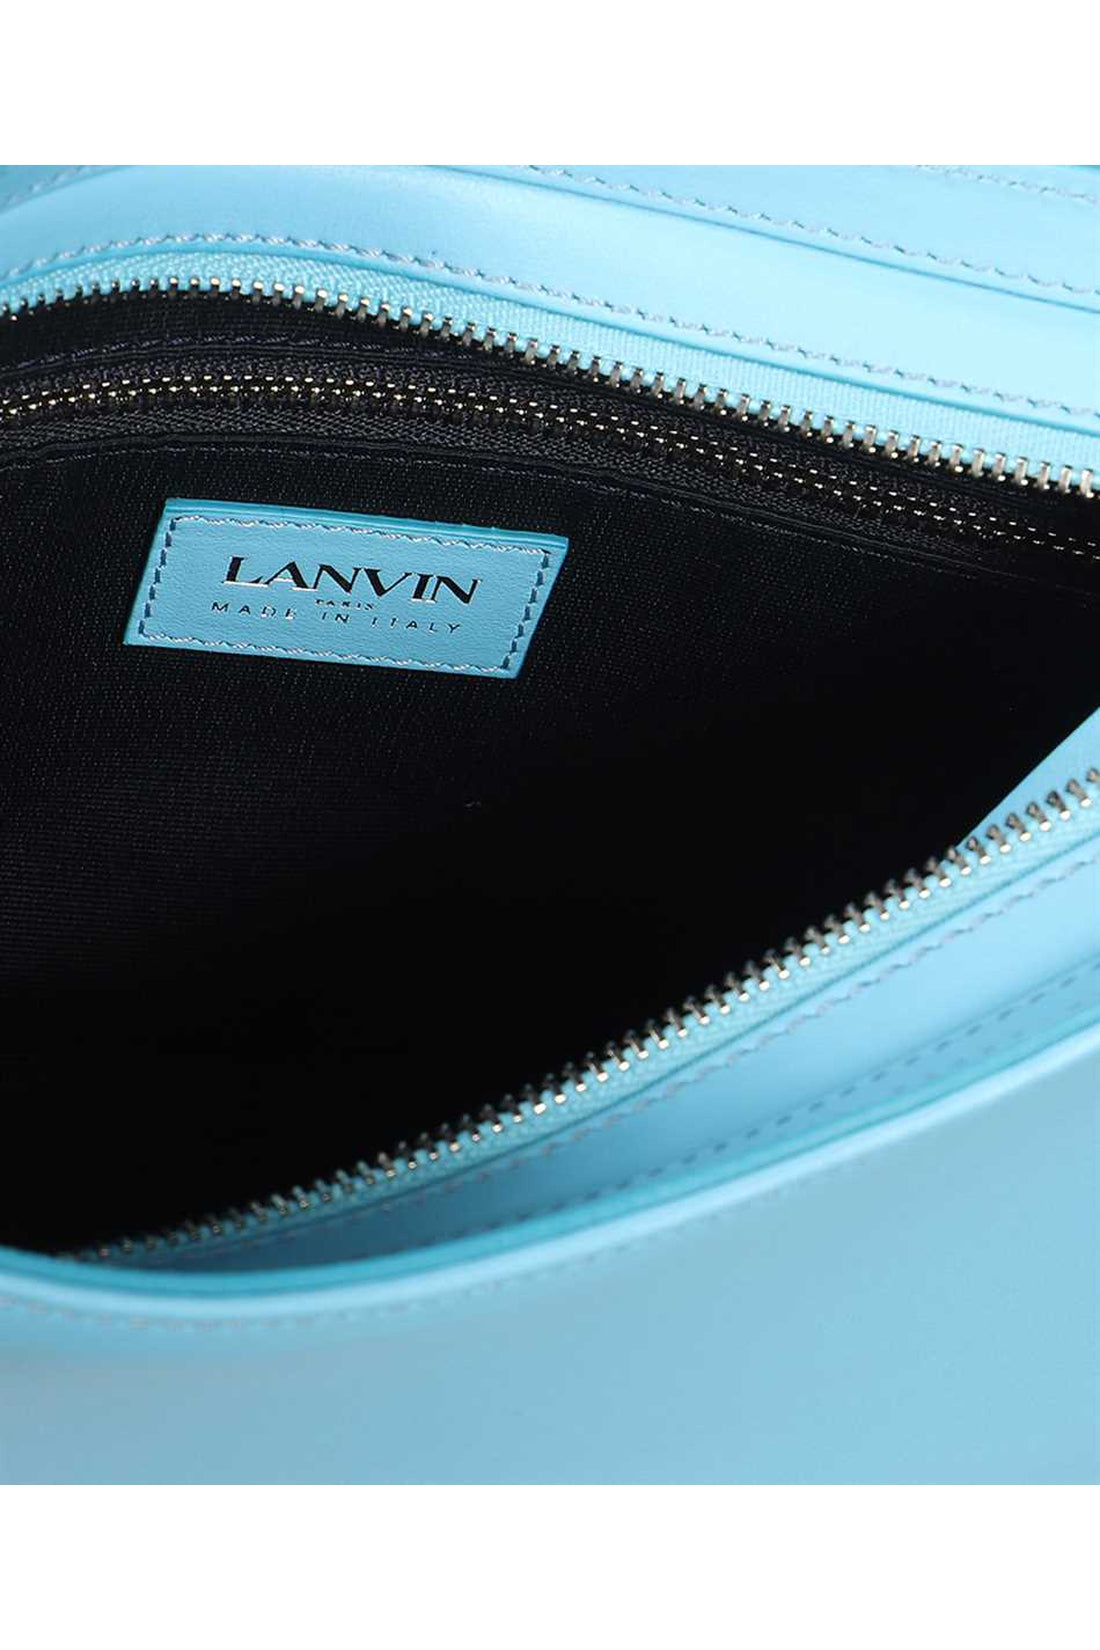 Lanvin-OUTLET-SALE-Leather shoulder bag-ARCHIVIST